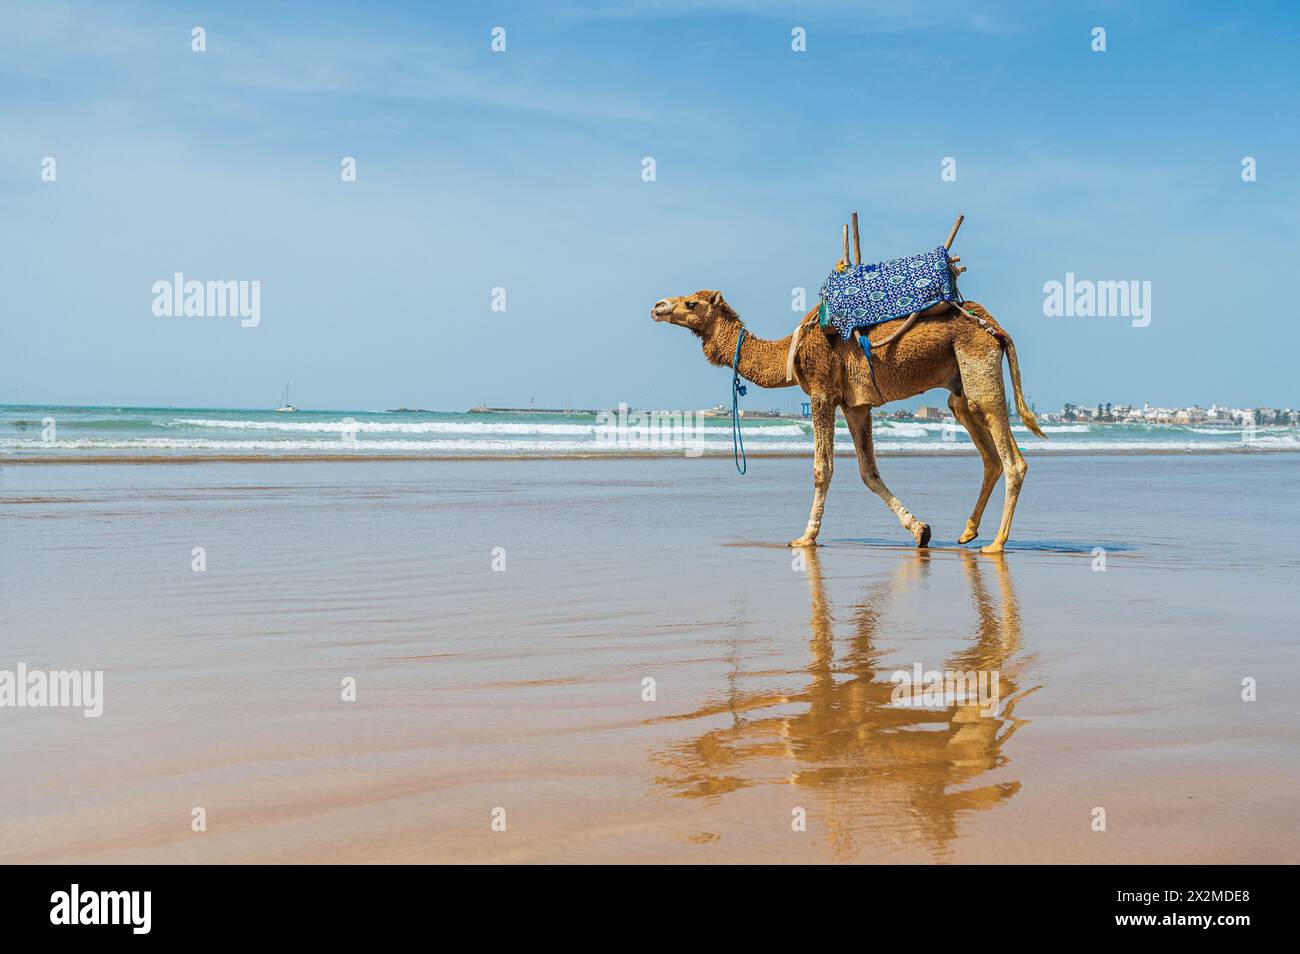 Un cammello adornato da una variopinta sella cammina piacevolmente lungo una spiaggia soleggiata in Marocco, con onde dolci e vedute lontane del paesaggio urbano che offrono un ambiente sere Foto Stock